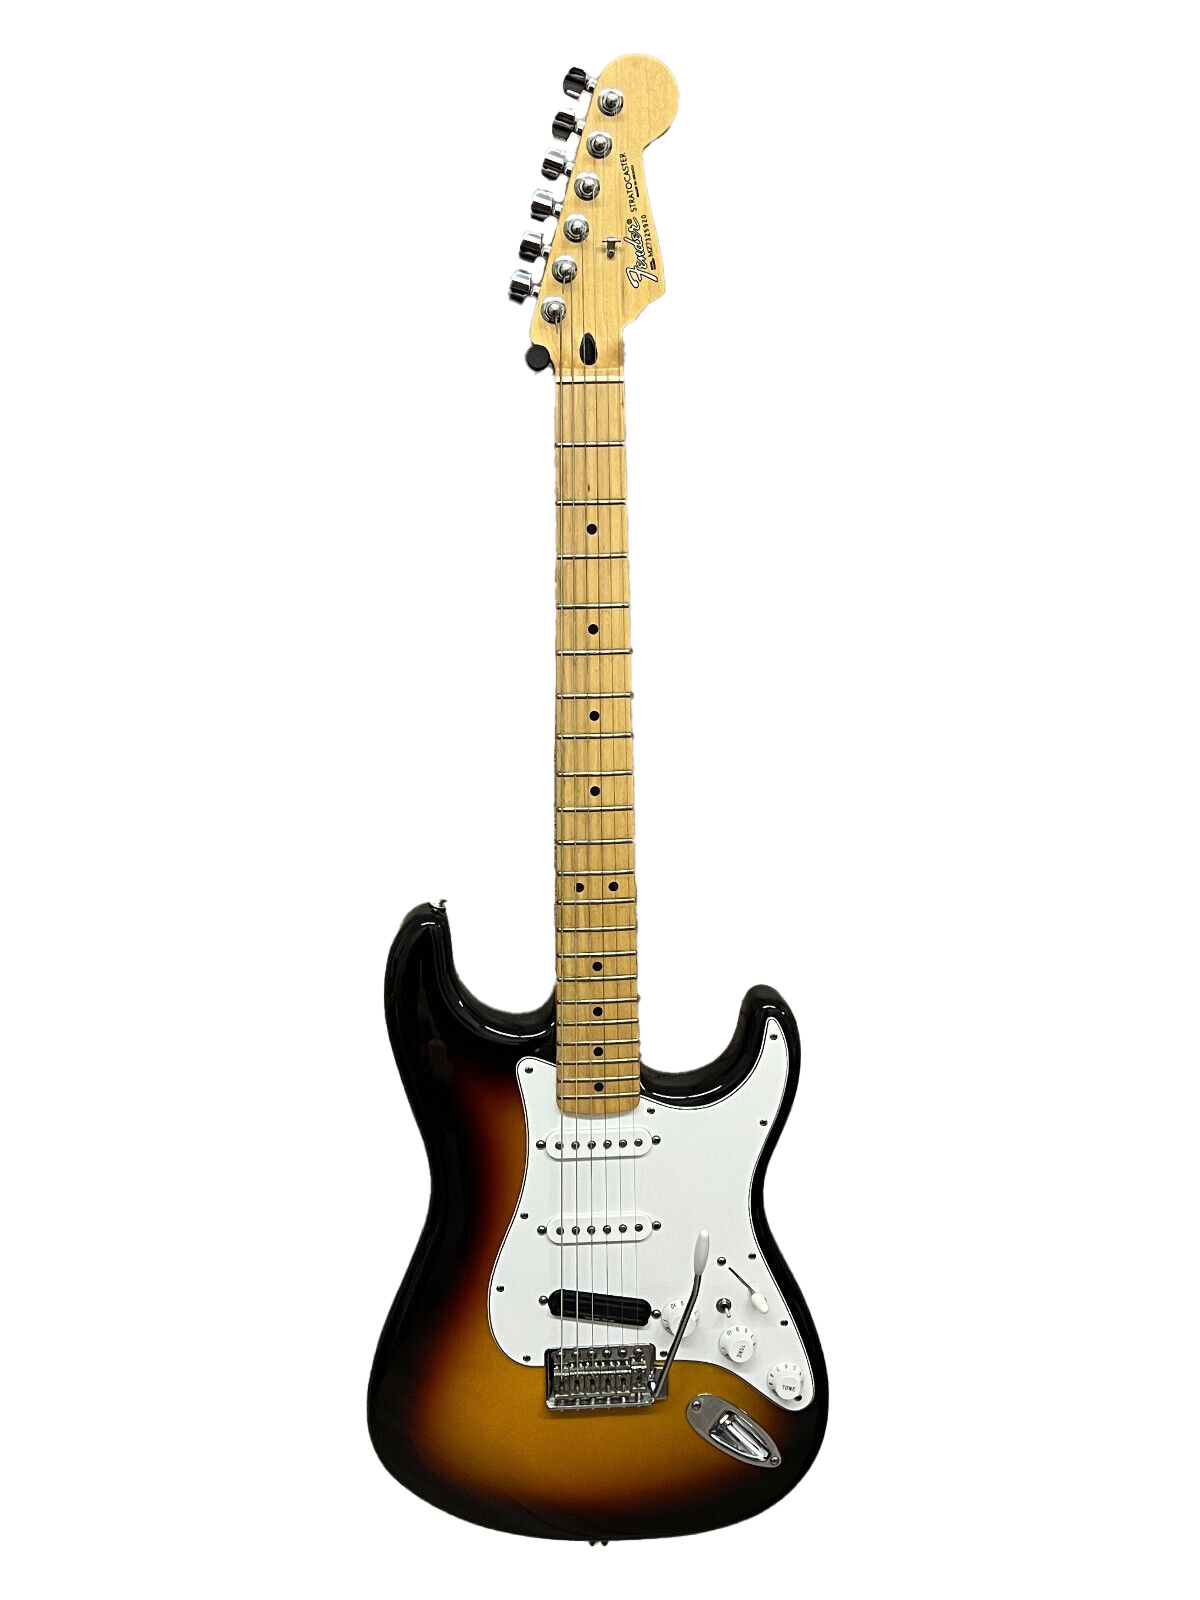 Fender Stratocaster SSS Sunburst MiM Seymour Duncan